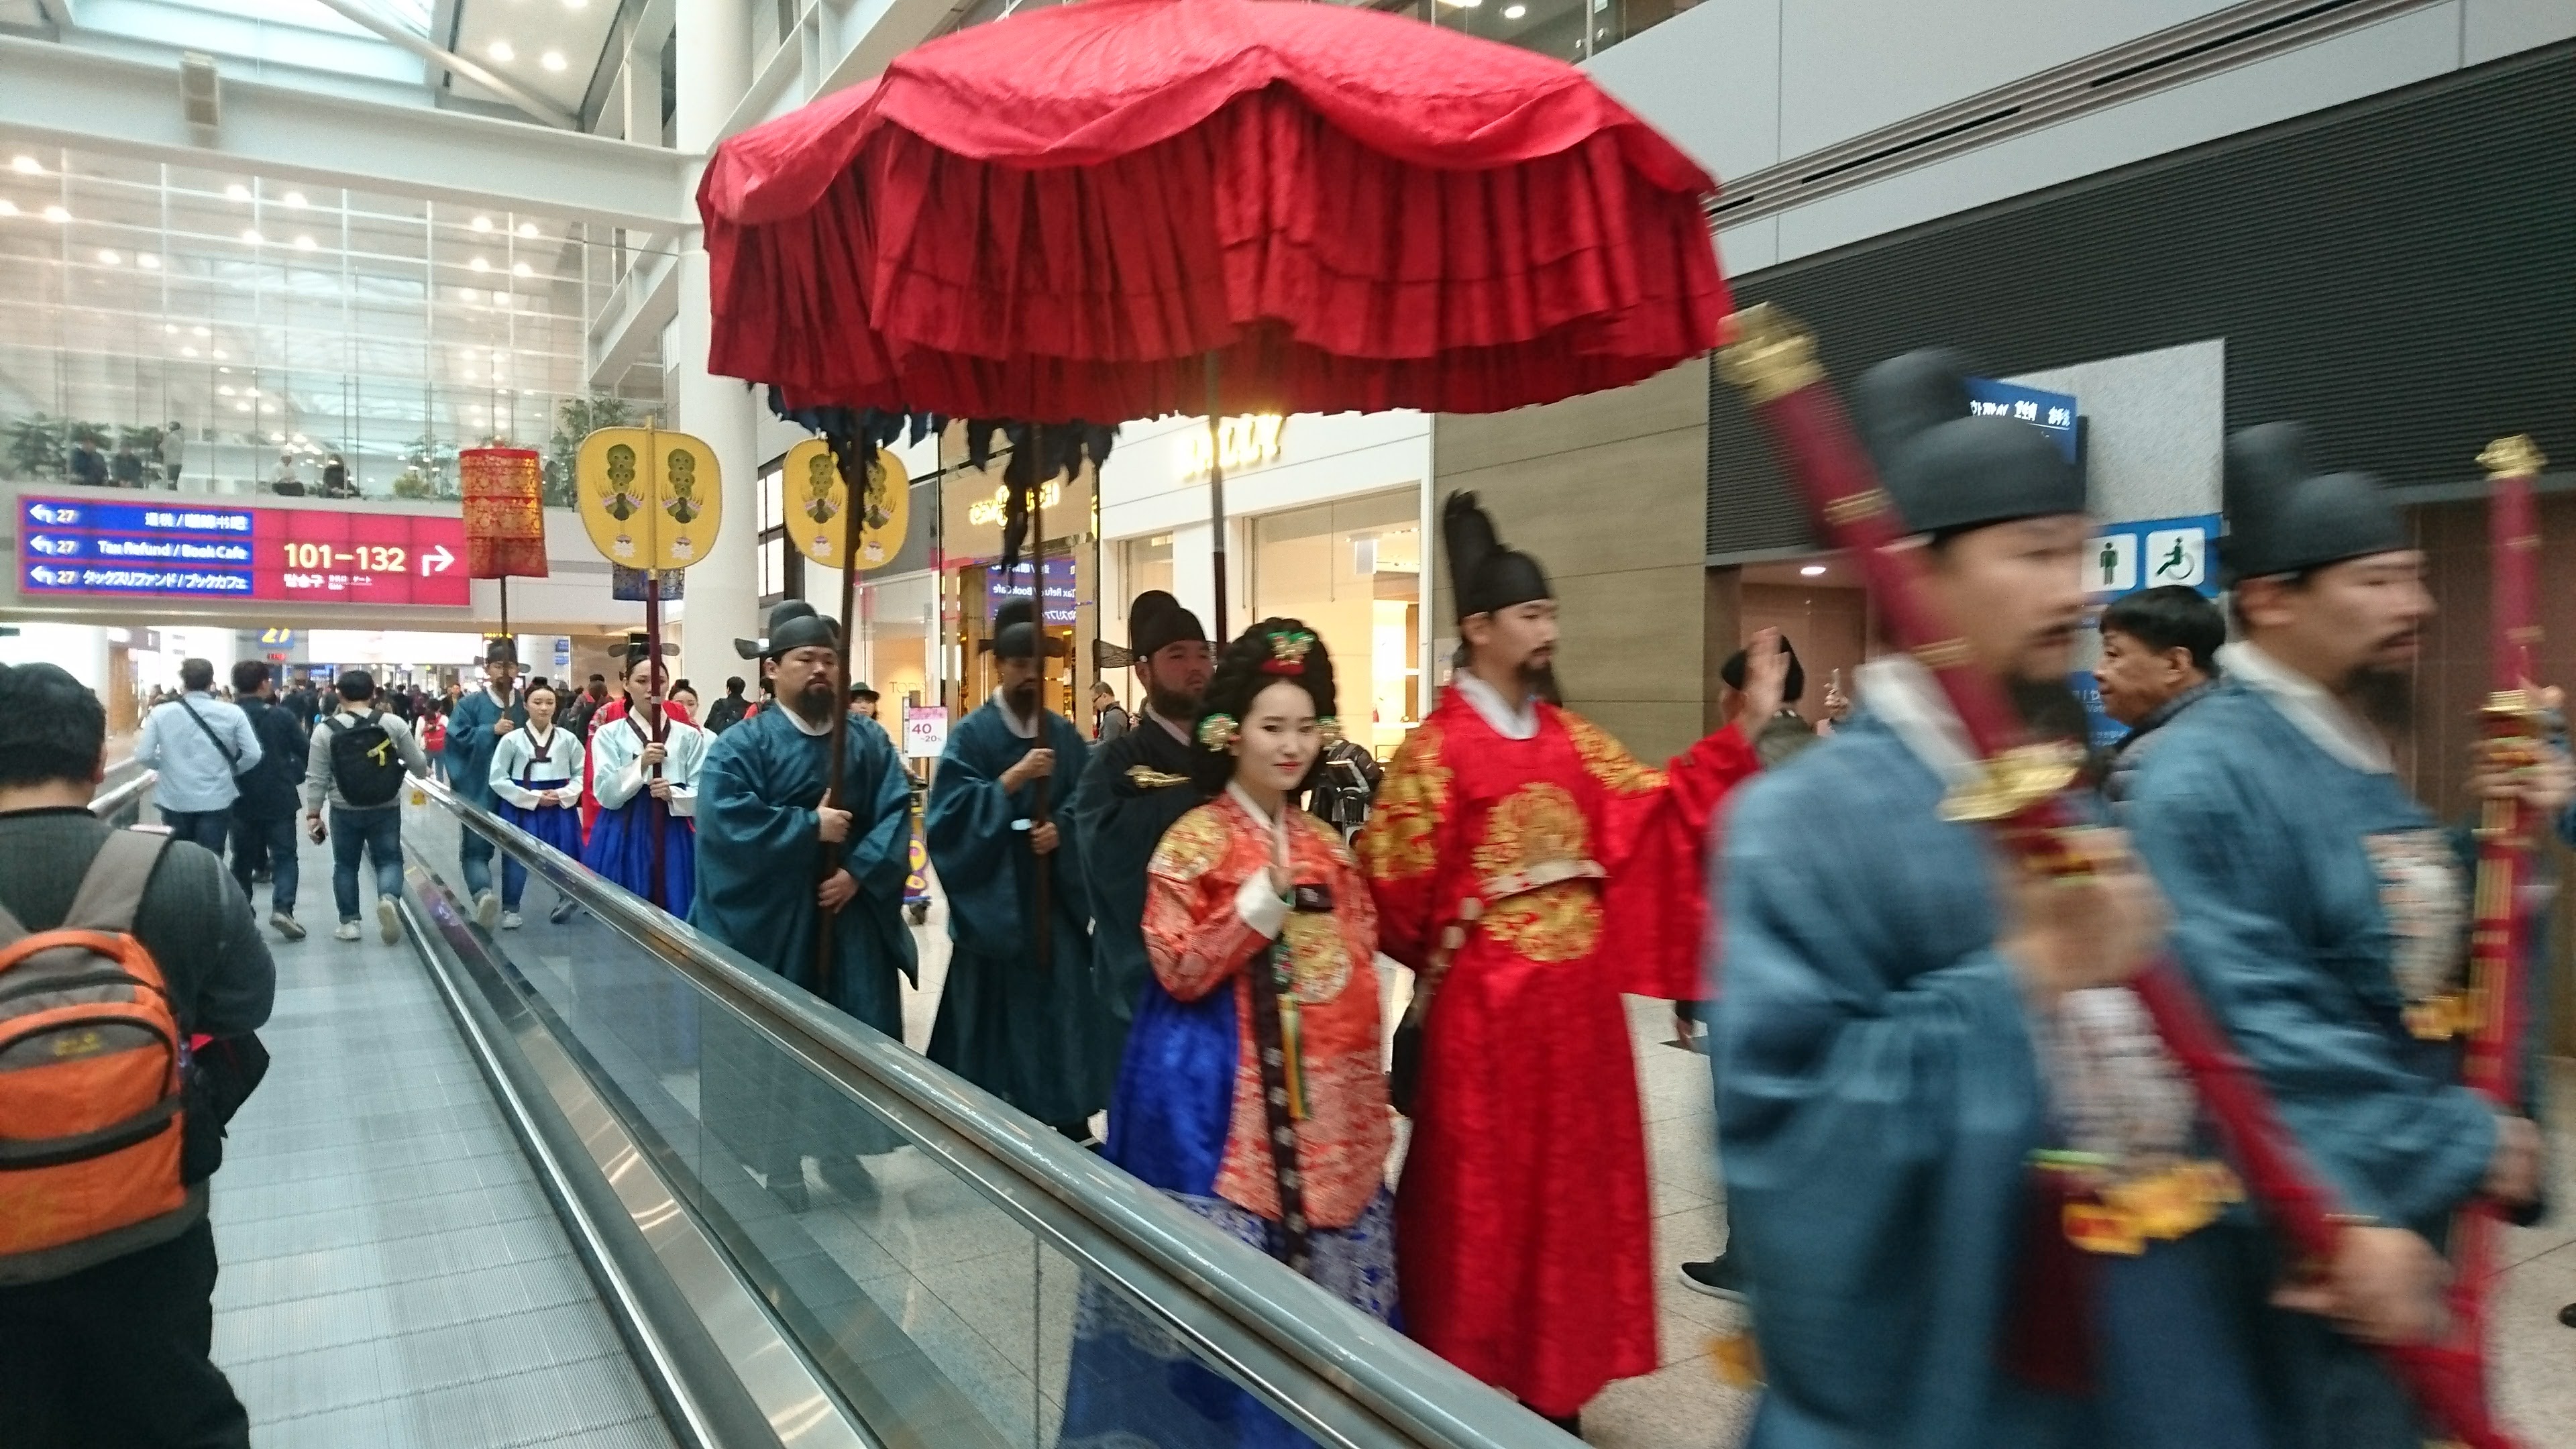 恐らく李朝あたりの仮装行列の一行が音楽とともに練り歩いています。韓国のこういったブランディングは参考になります。